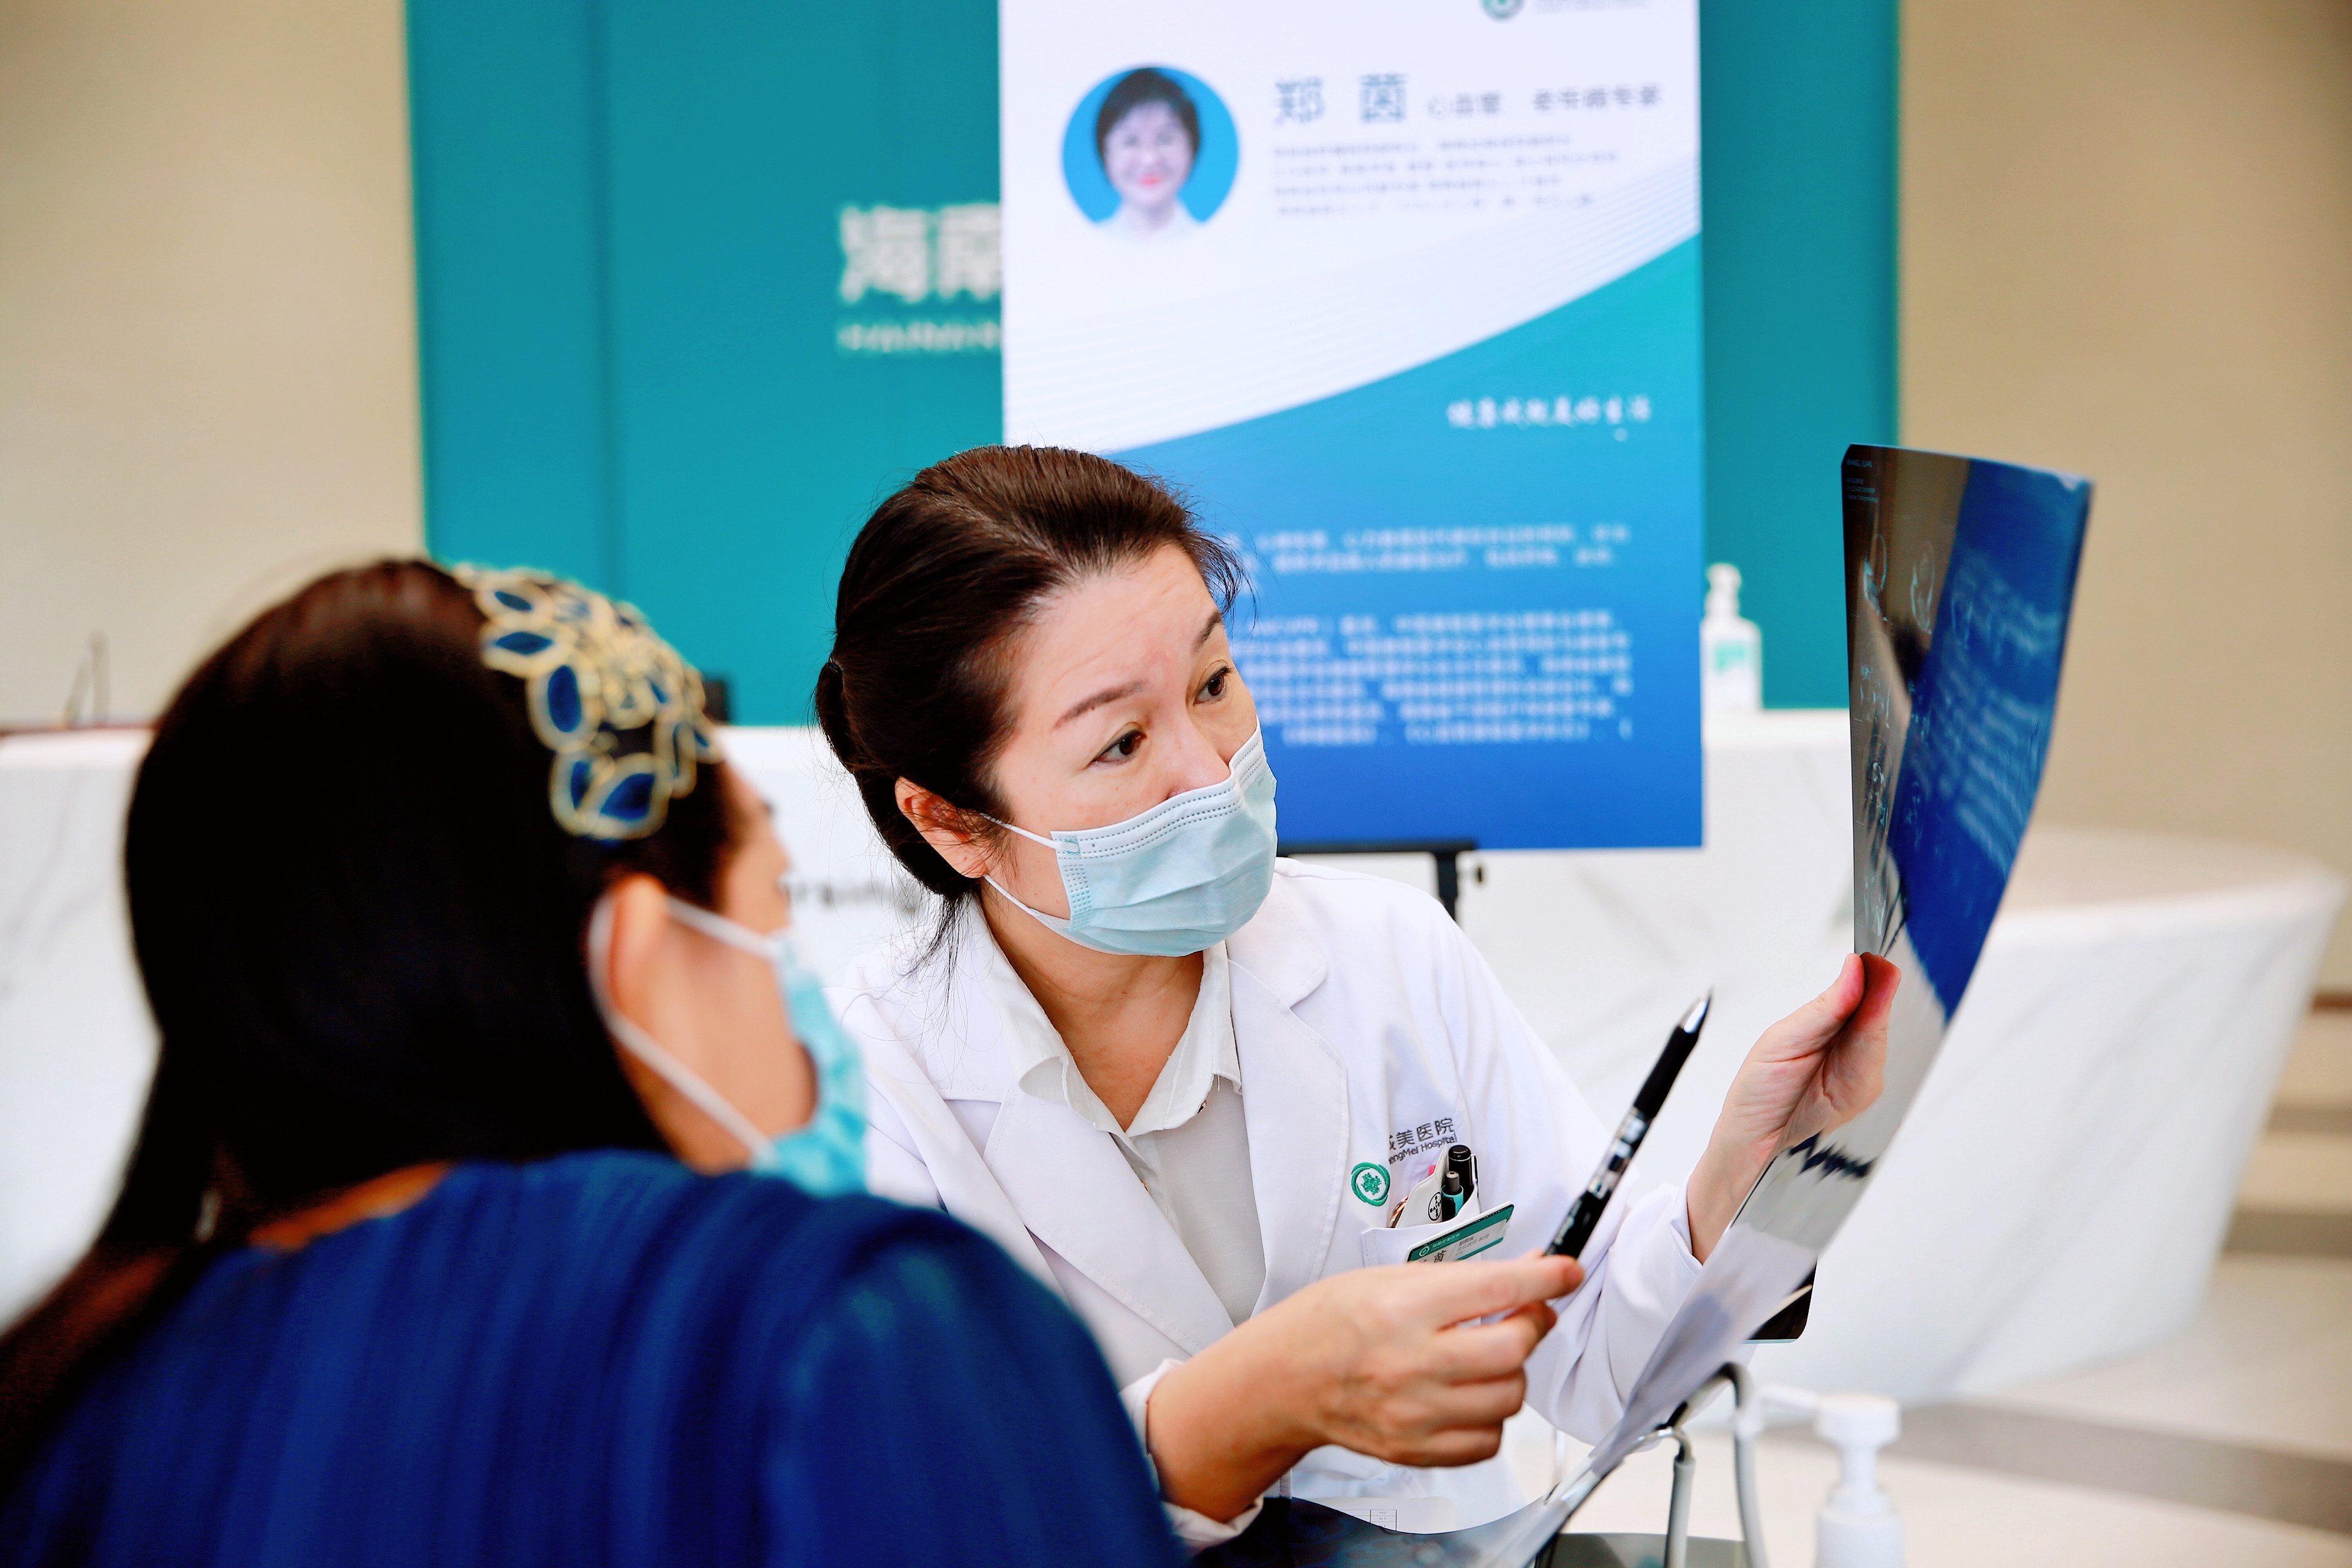 海南成美医院举办「世界高血压日」健康教育活动